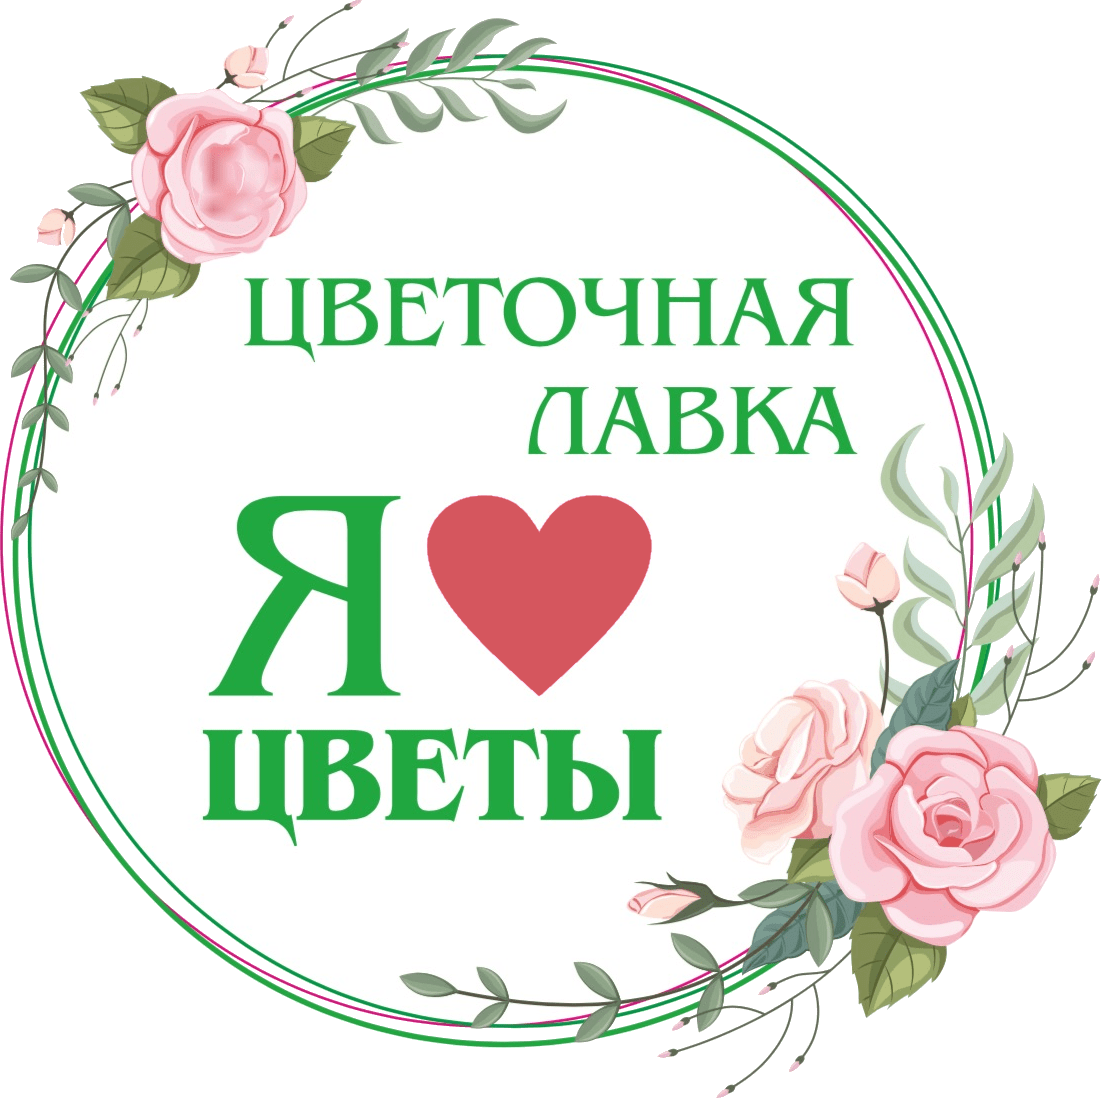 «Цветочная лавка» - интернет-магазин цветов в Ватутинках